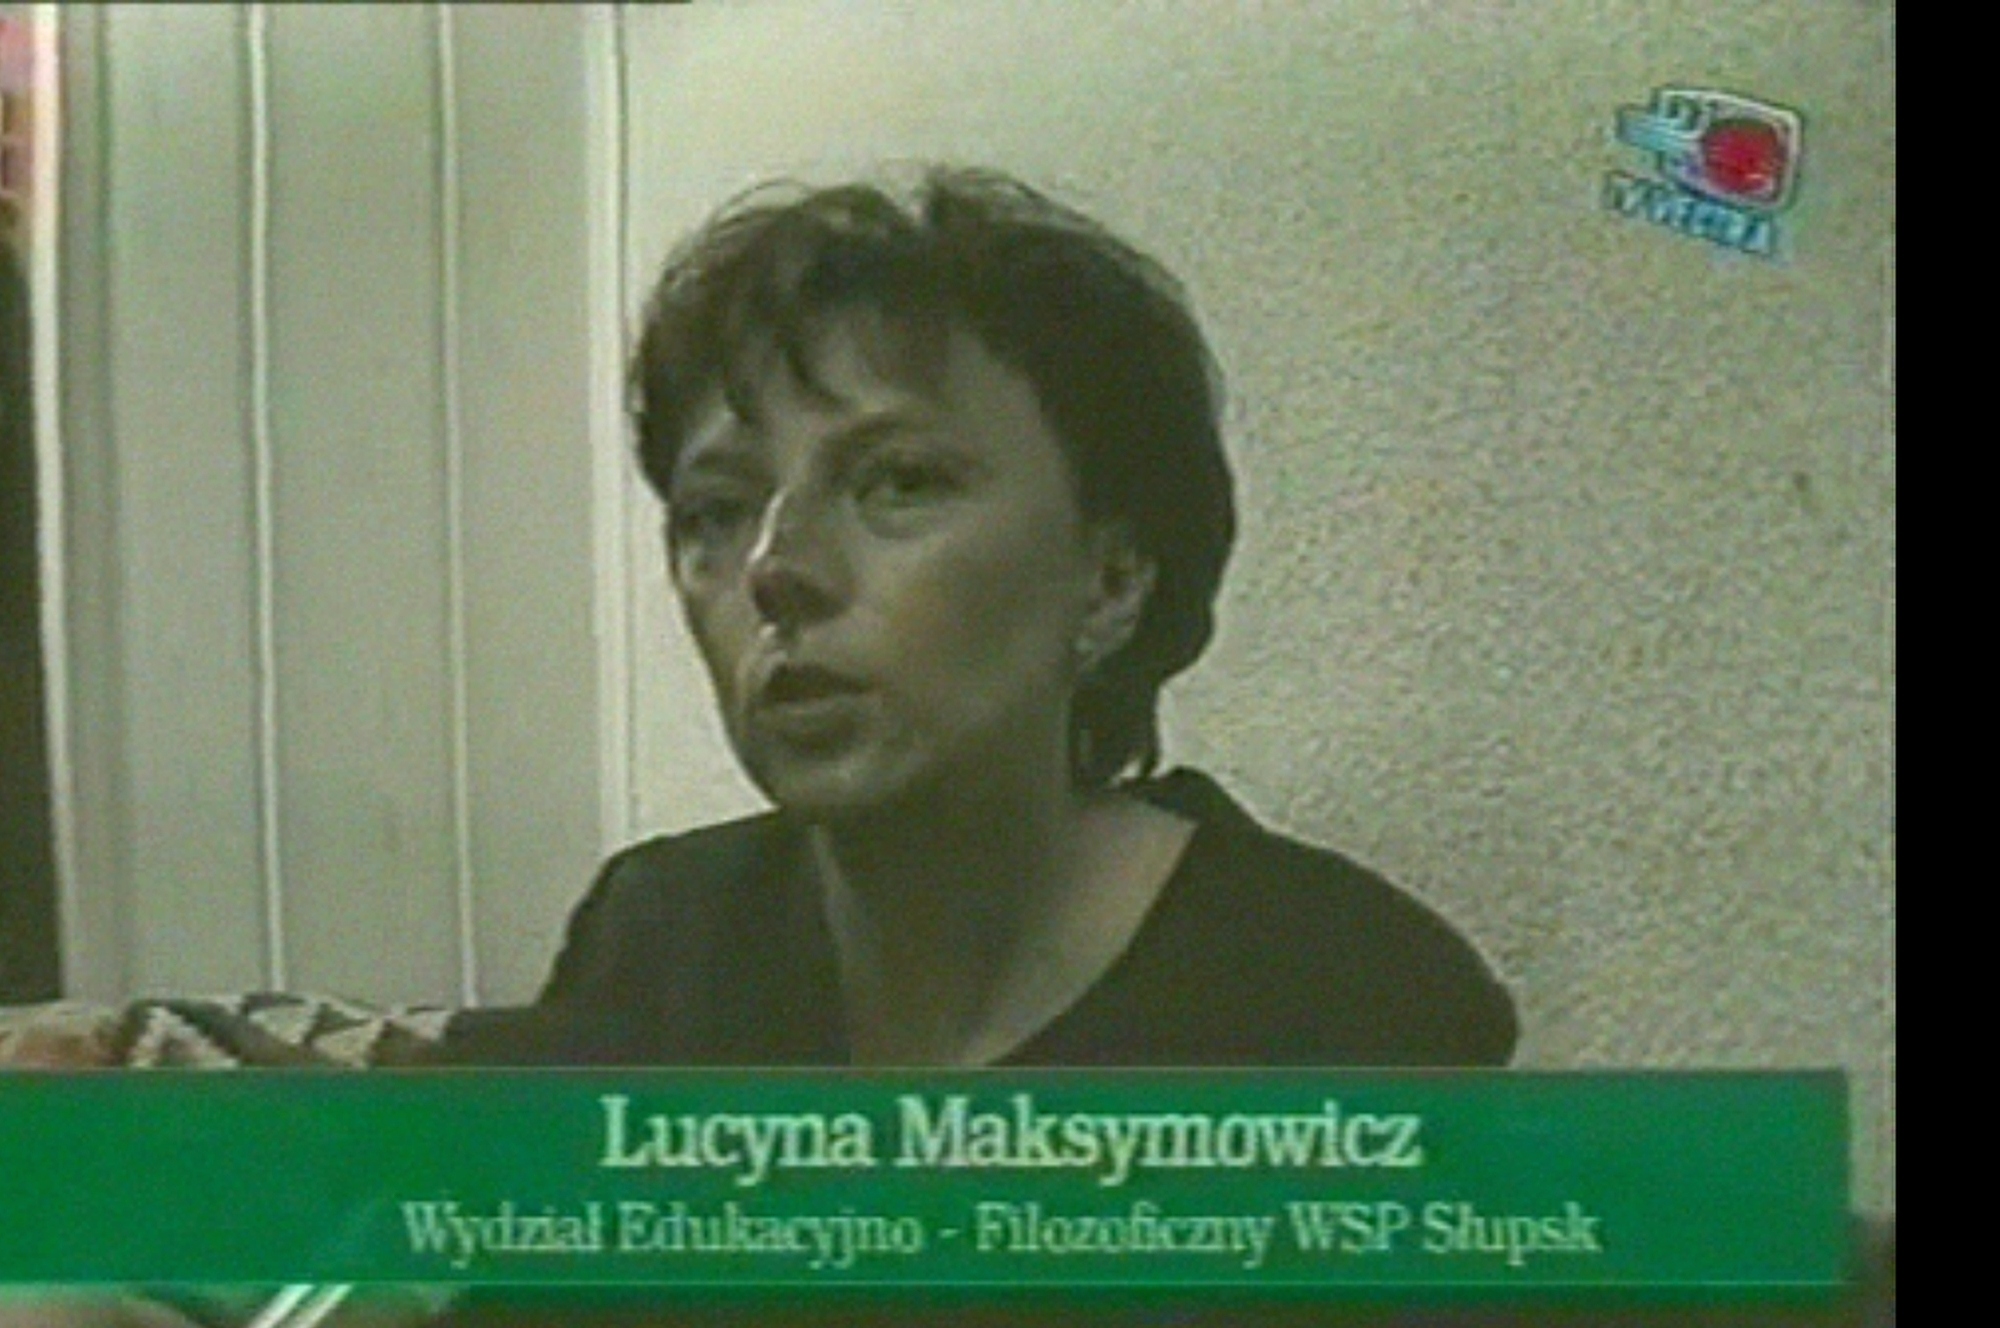 Lucyna Maksymowicz - Seminarium w Supsku 1999